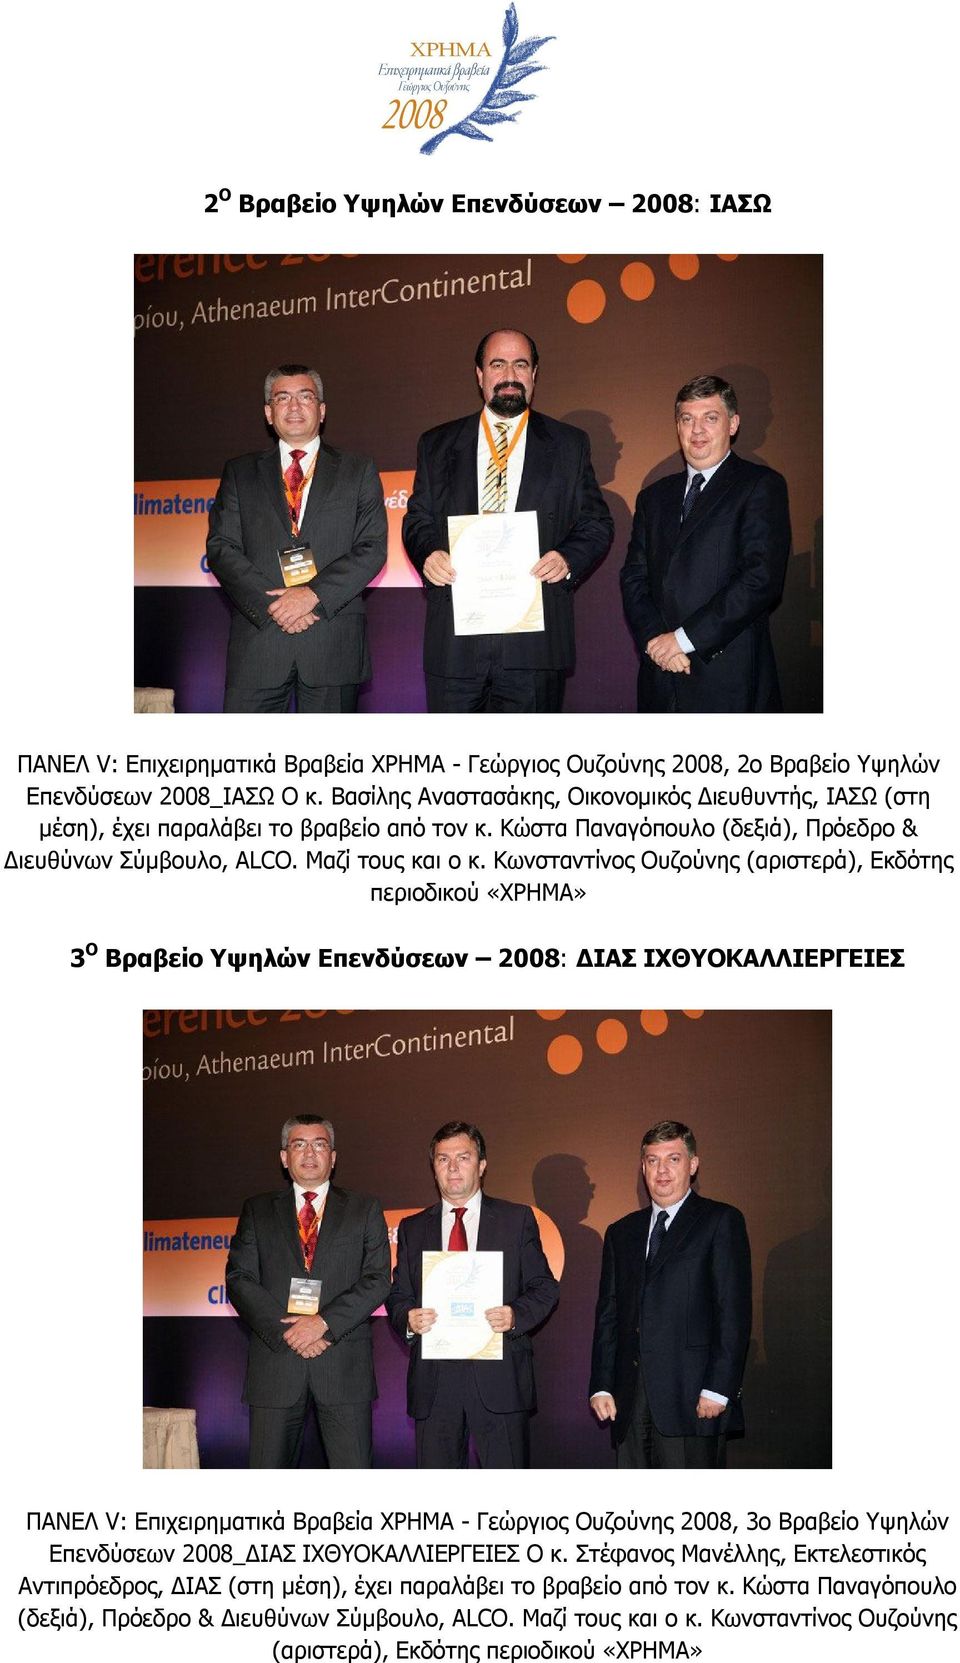 Κωνσταντίνος Ουζούνης (αριστερά), Εκδότης περιοδικού «ΧΡΗΜΑ» 3 Ο Βραβείο Υψηλών Επενδύσεων 2008: ΔΙΑΣ ΙΧΘΥΟΚΑΛΛΙΕΡΓΕΙΕΣ ΠΑΝΕΛ V: Επιχειρηματικά Βραβεία ΧΡΗΜΑ - Γεώργιος Ουζούνης 2008, 3ο Βραβείο